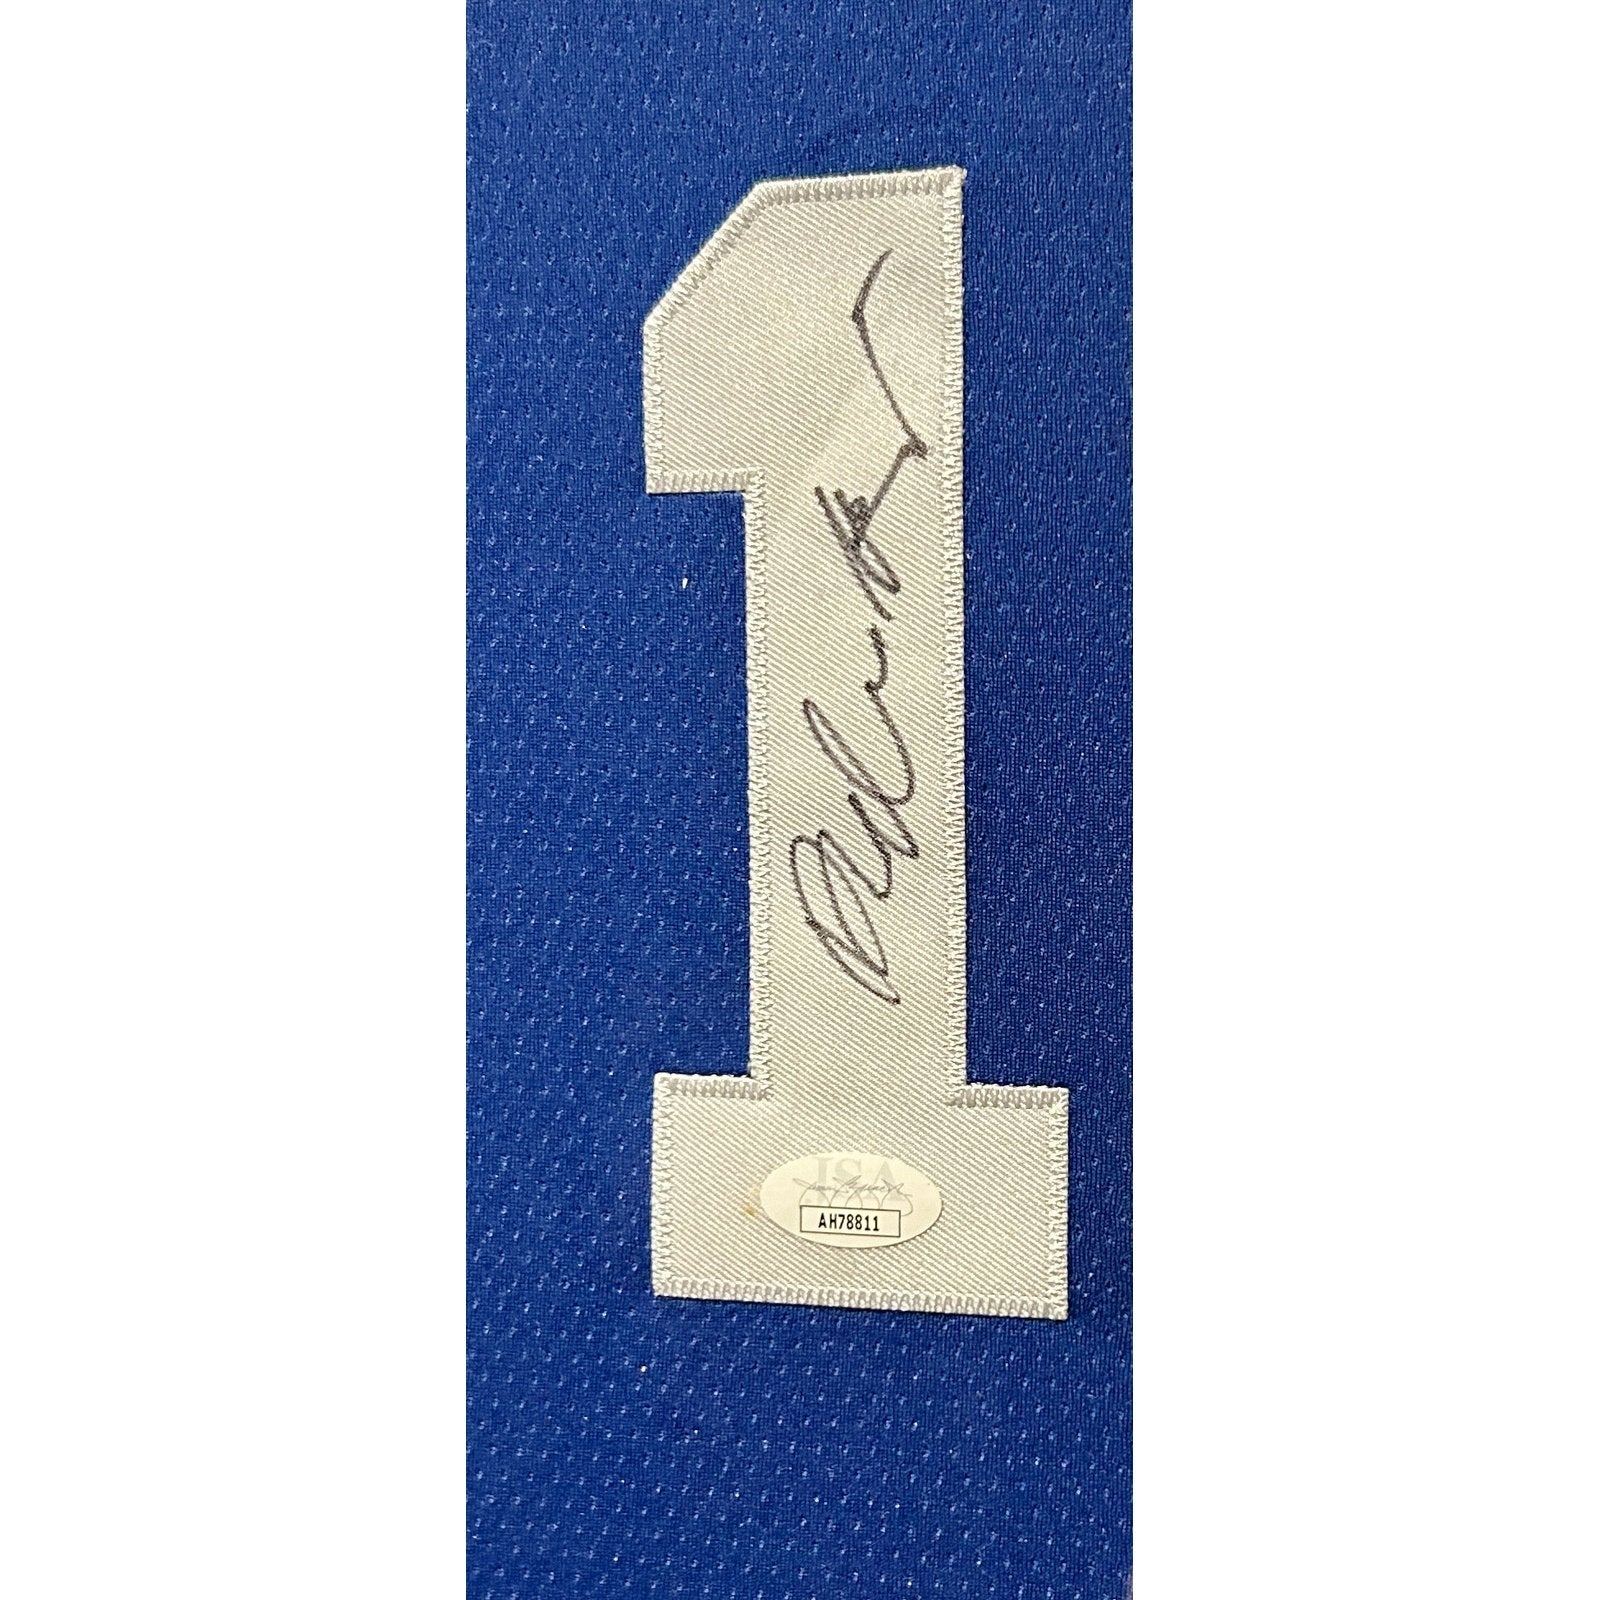 Bobby Hurley Framed Signed Front Duke Jersey JSA Autographed Blue Devils